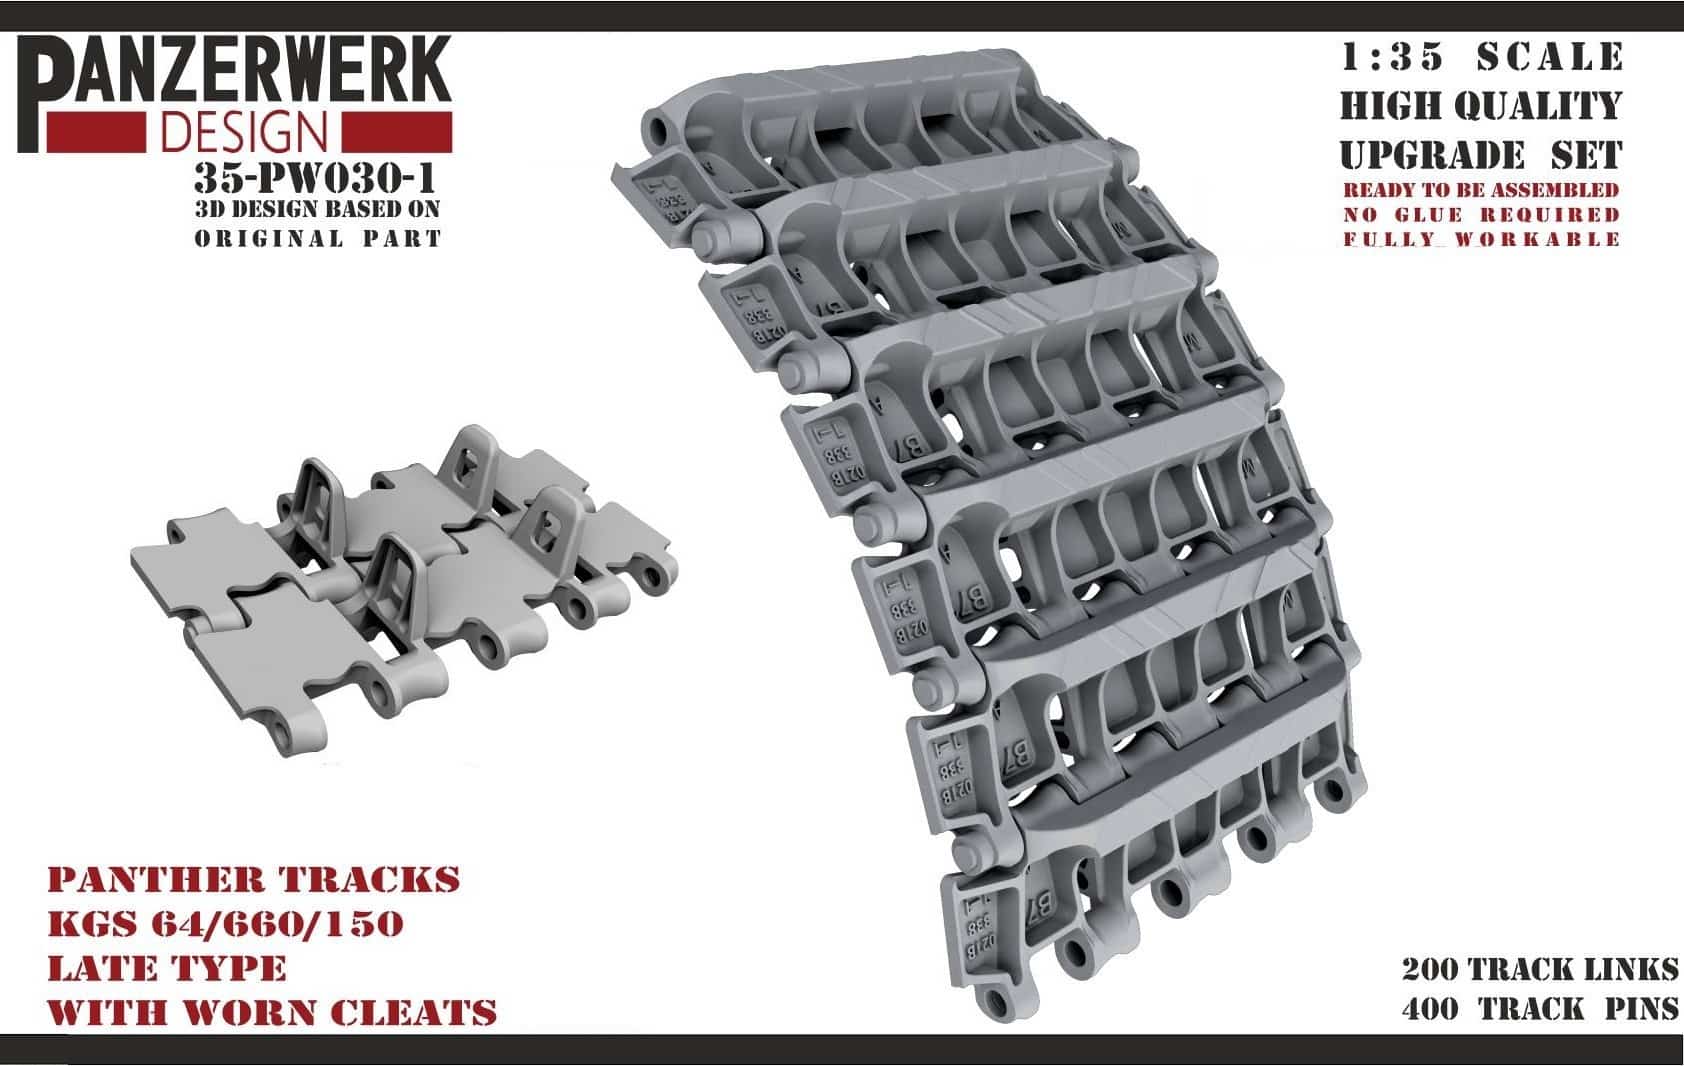 Panzerwerk Design: Tracks with worn cleats